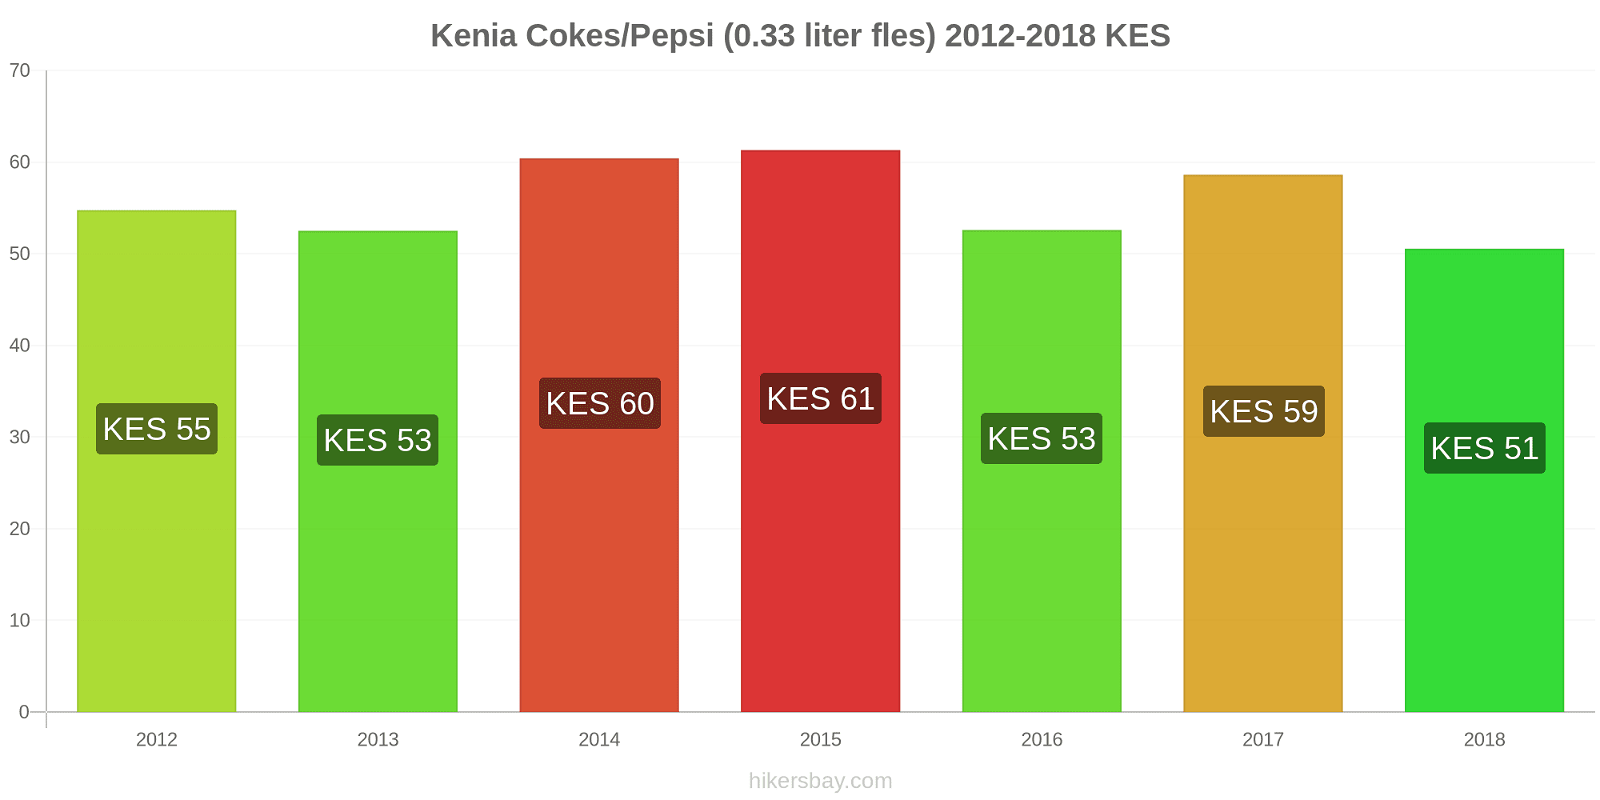 Kenia prijswijzigingen Cokes/Pepsi (0,33 literfles) hikersbay.com